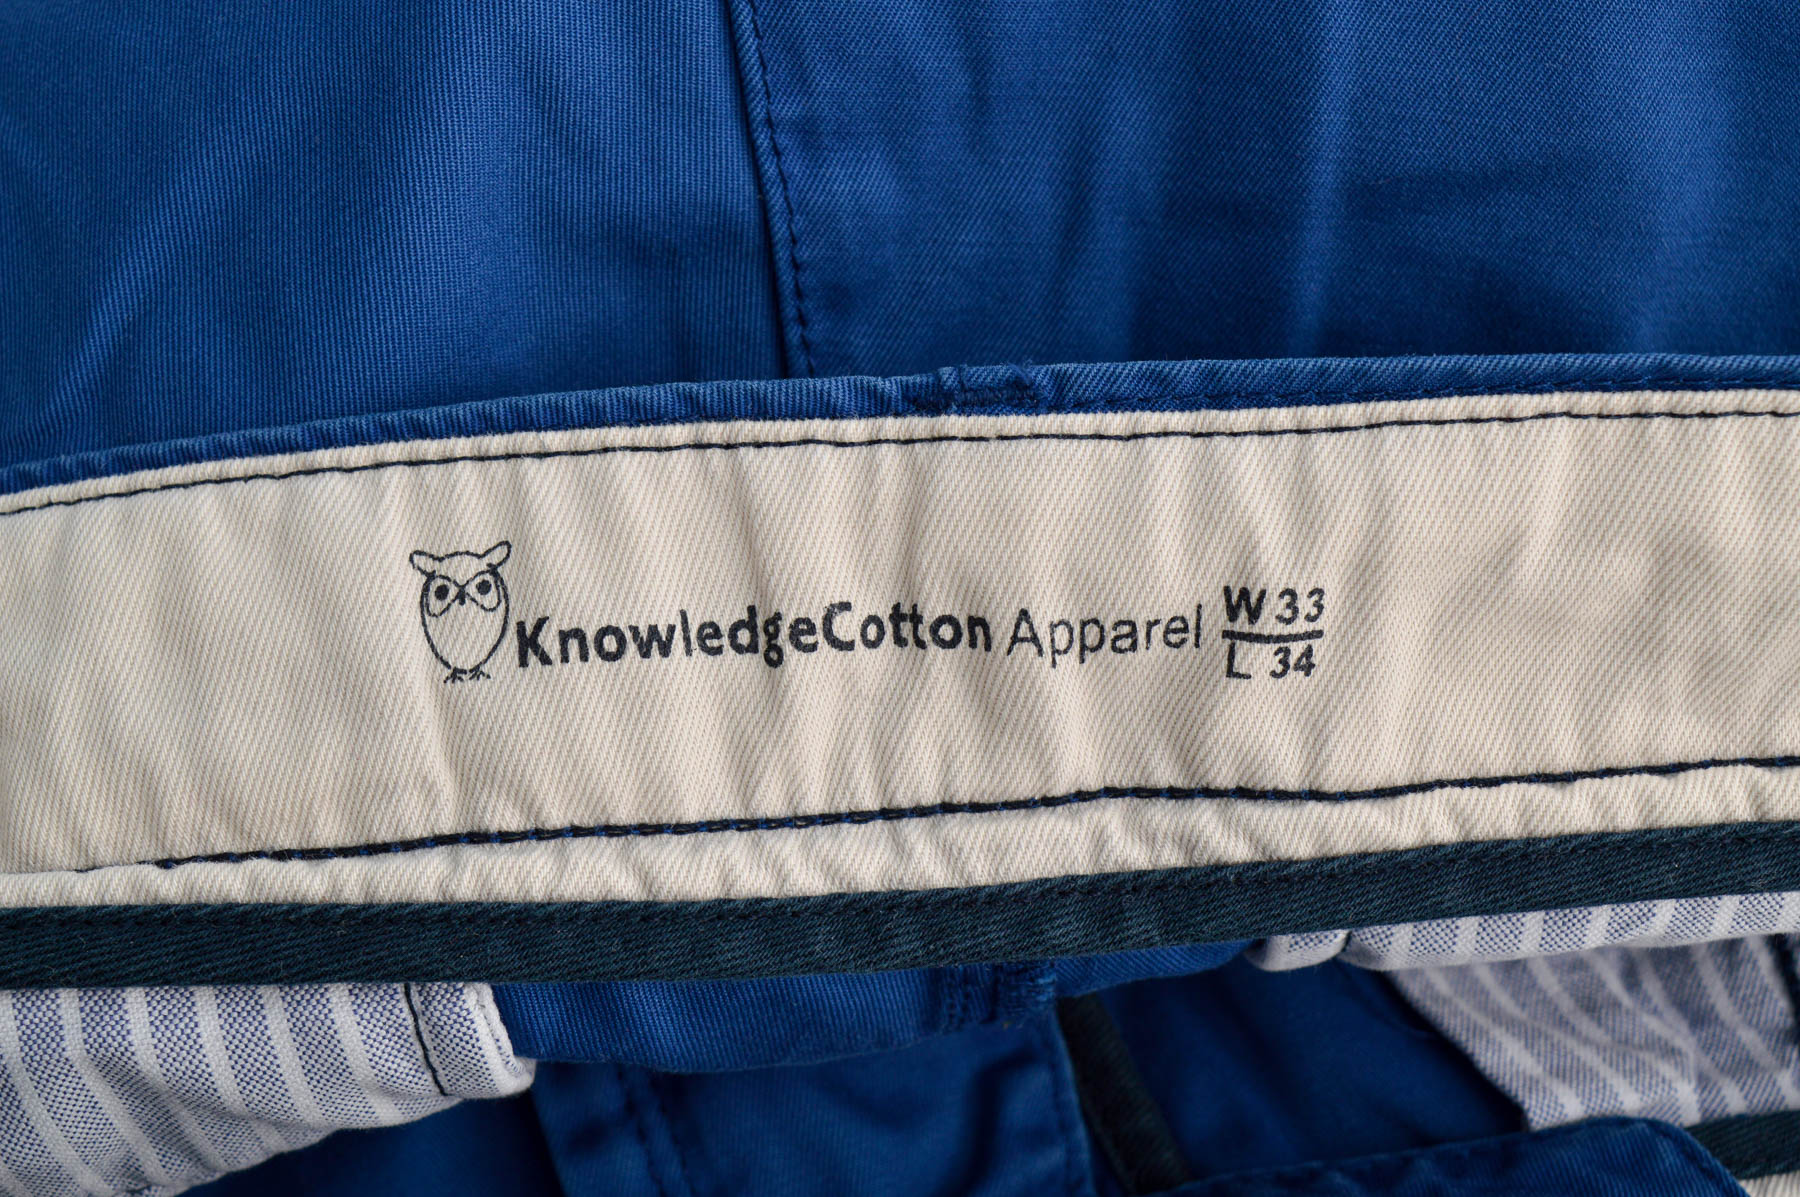 Pantalon pentru bărbați - KnowledgeCotton Apparel - 2